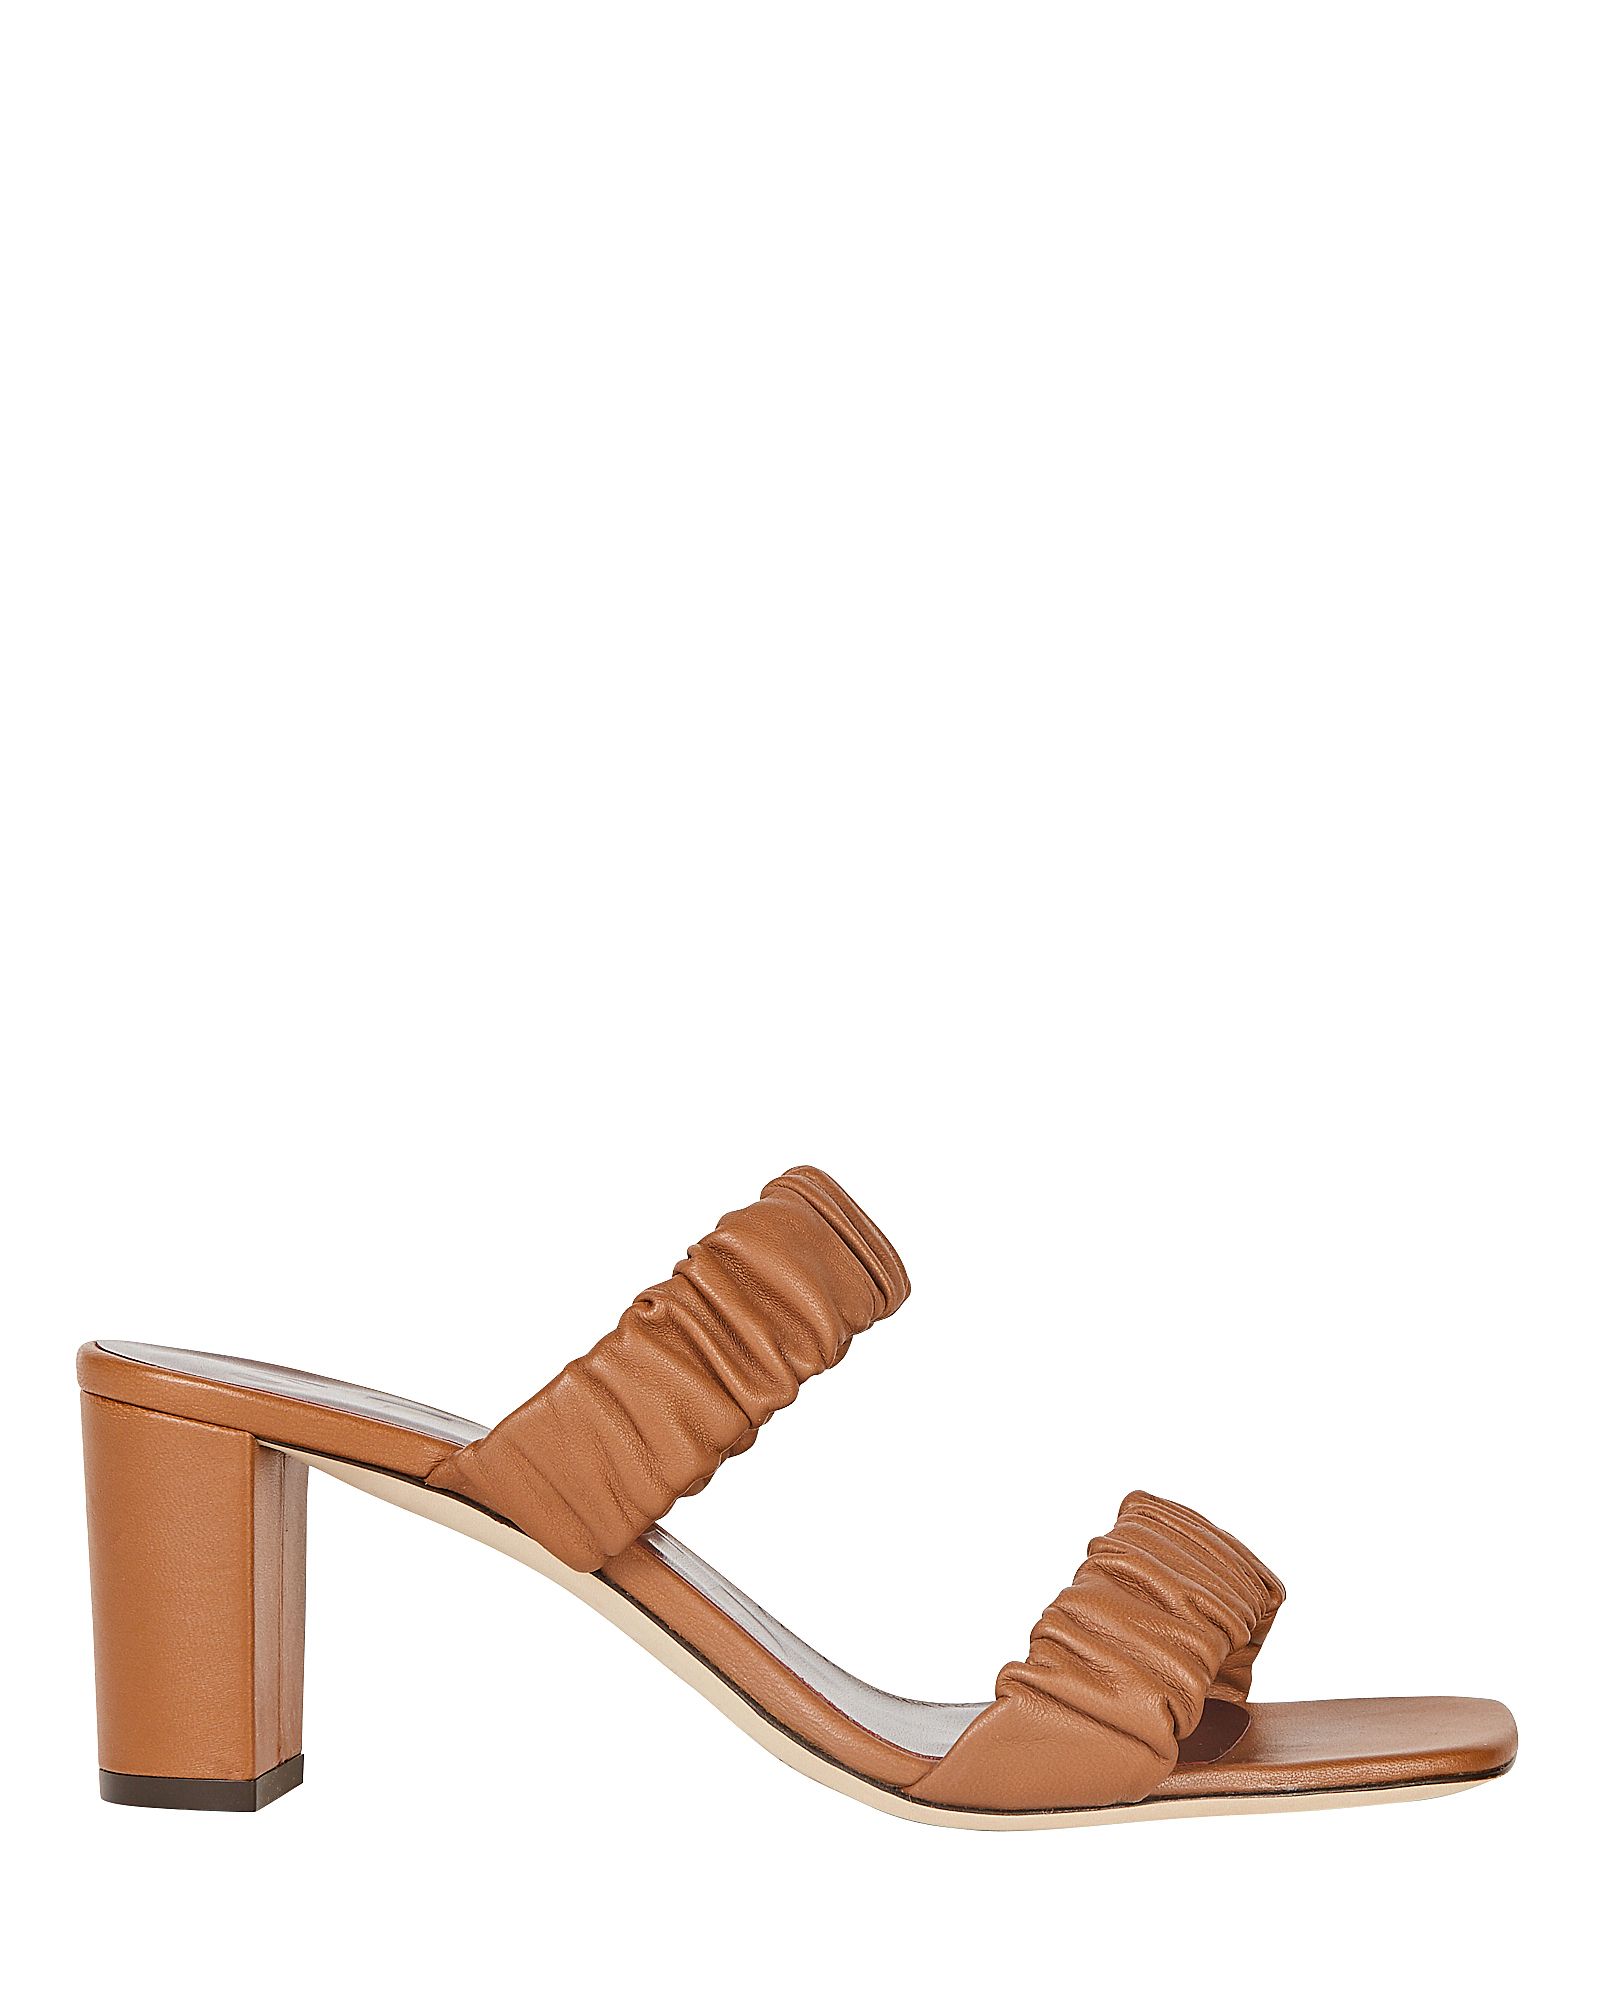 STAUD Frankie Leather Slide Sandals, Brown 38.5 | INTERMIX